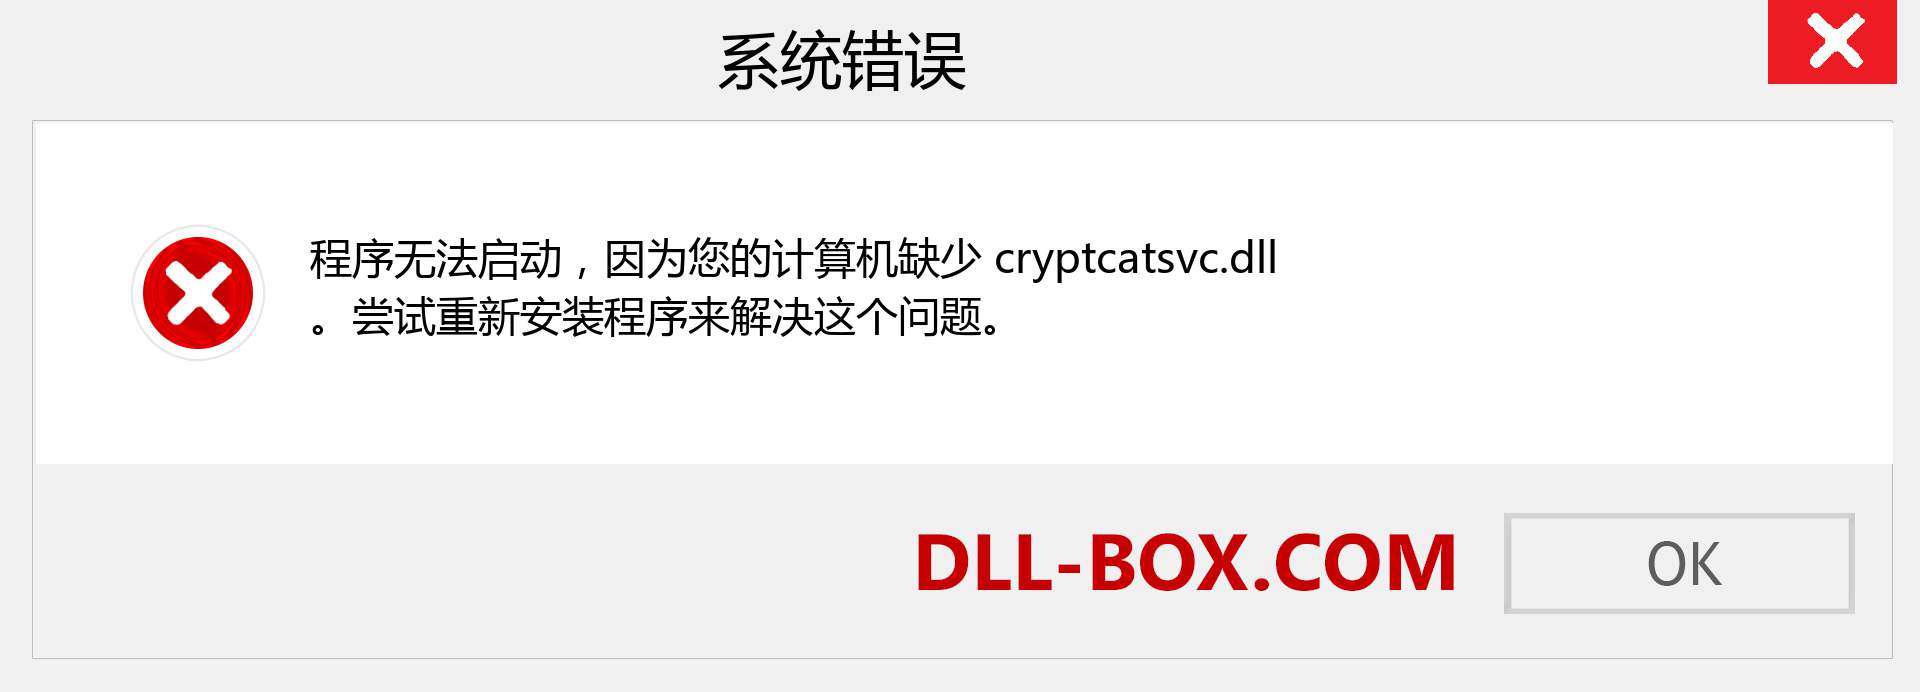 cryptcatsvc.dll 文件丢失？。 适用于 Windows 7、8、10 的下载 - 修复 Windows、照片、图像上的 cryptcatsvc dll 丢失错误